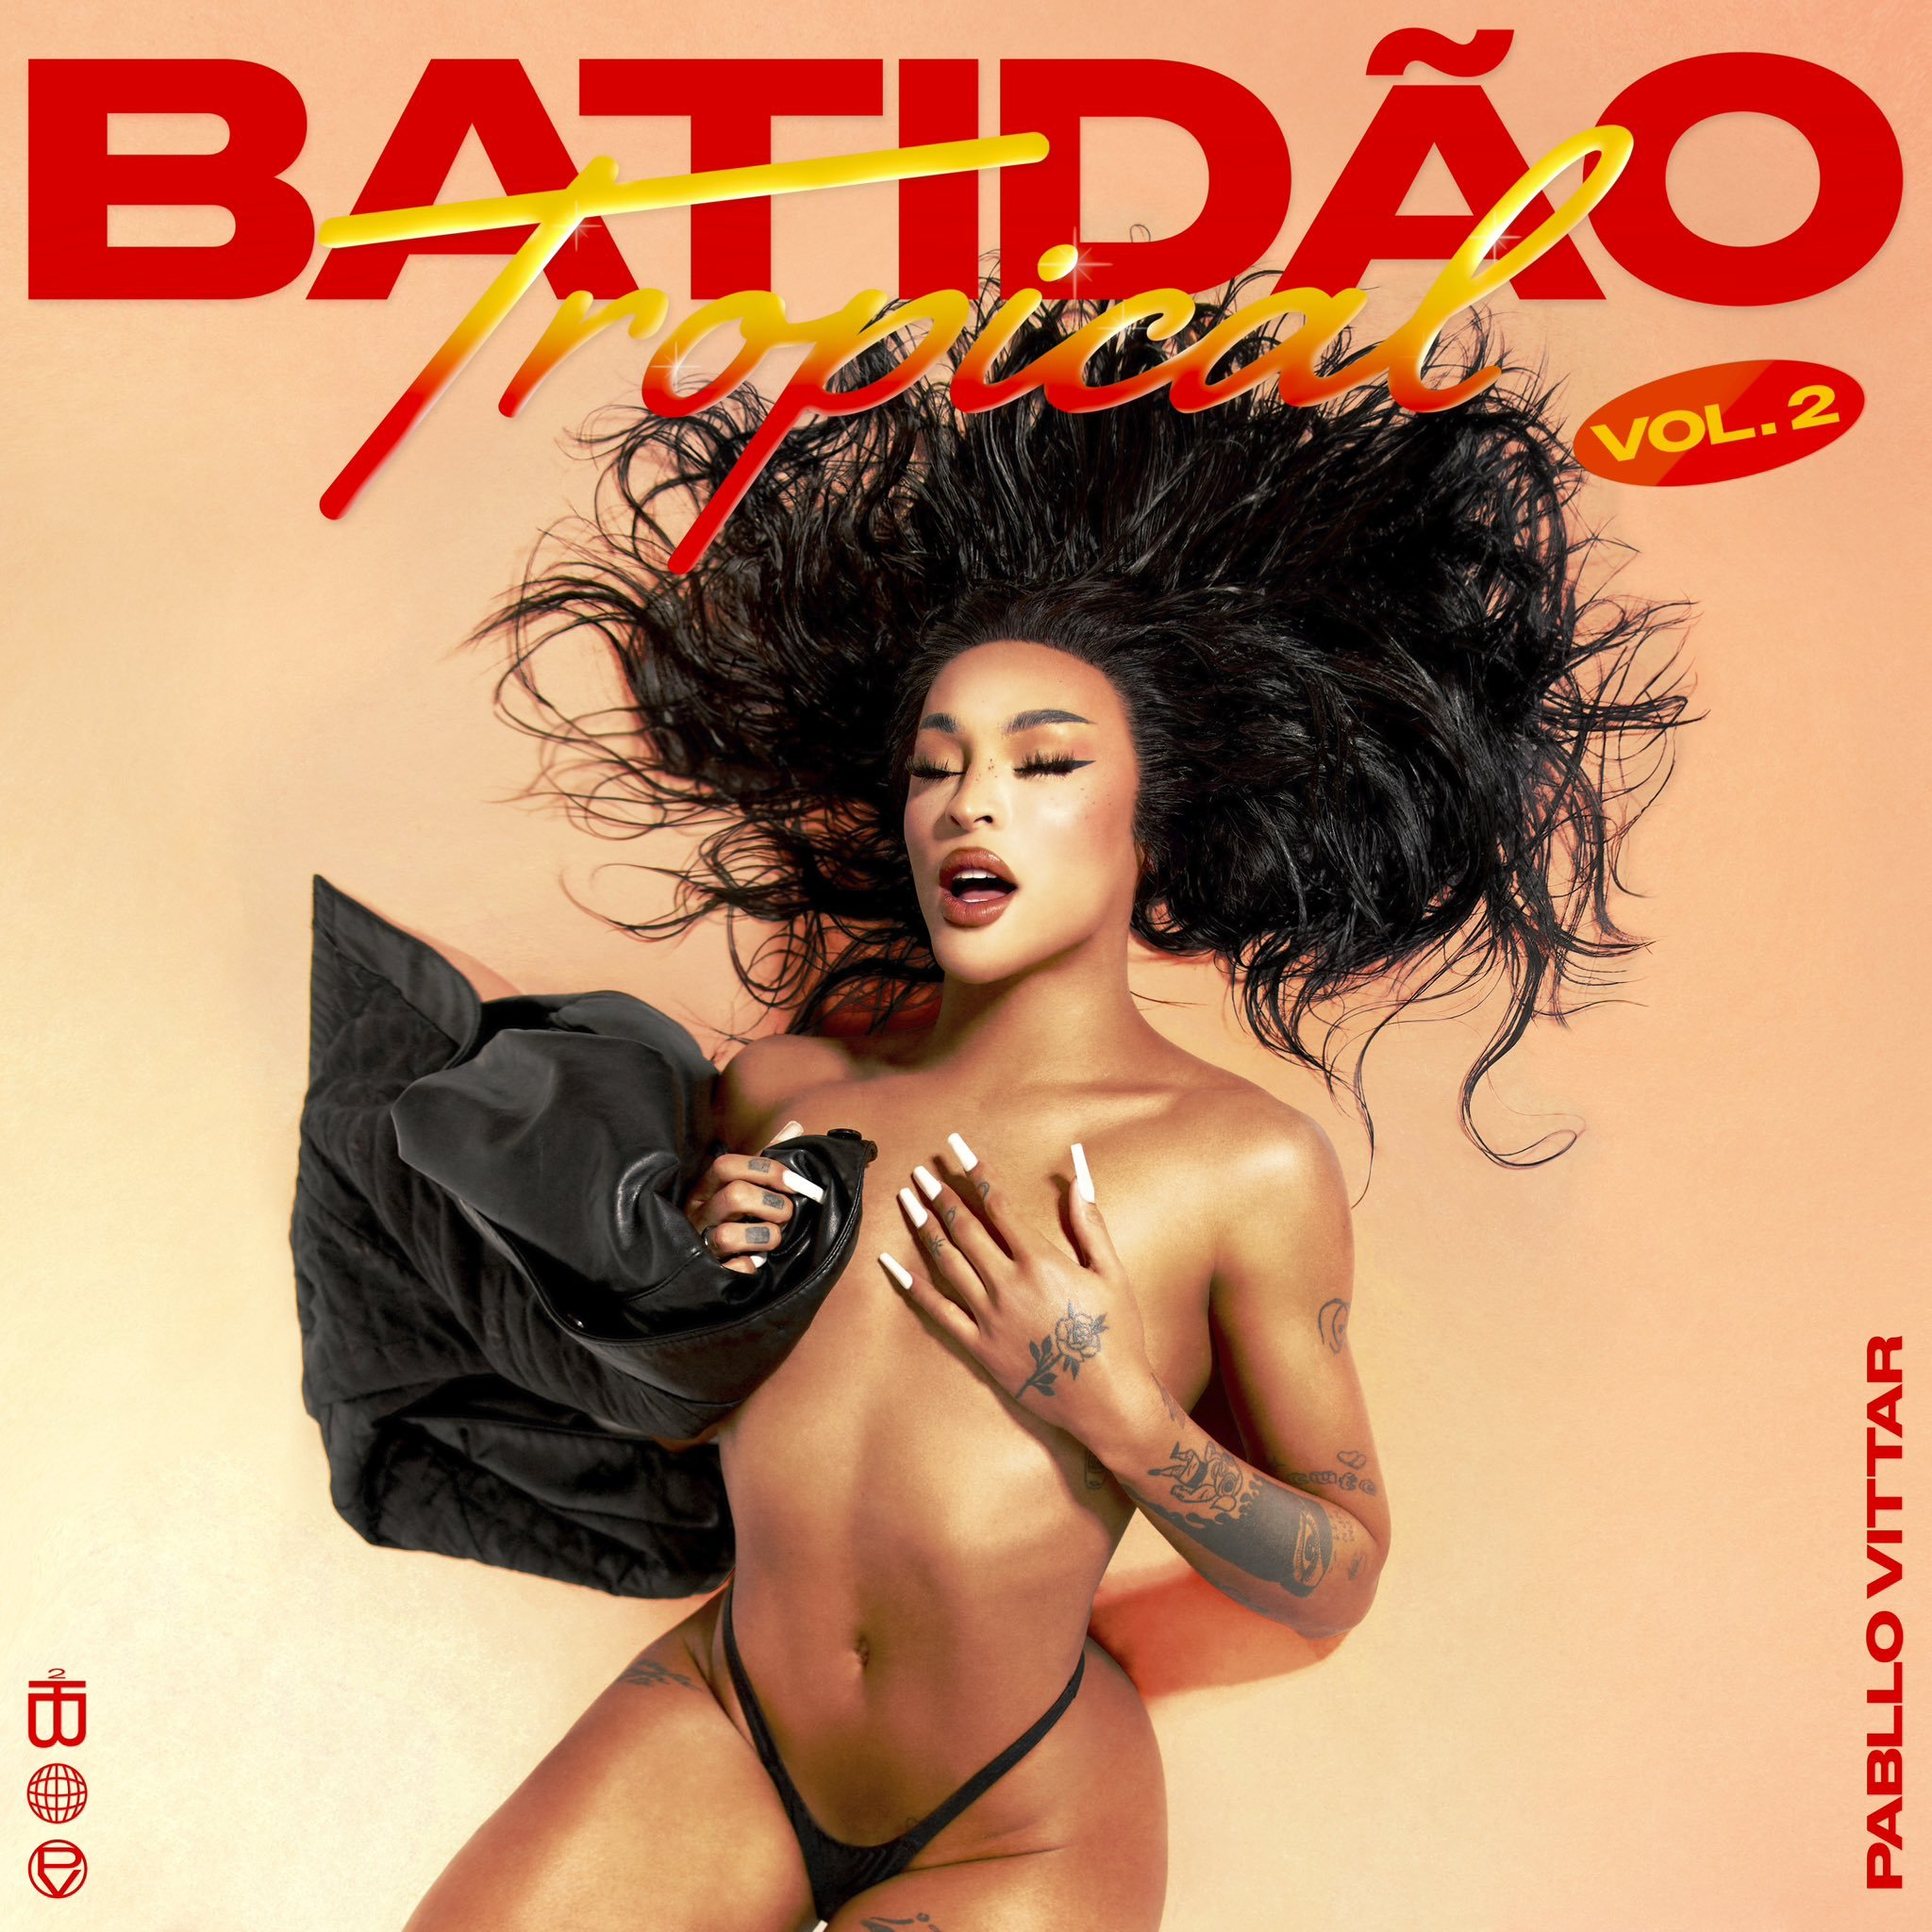 Pabllo Vittar — Batidão Tropical, Vol. 2 cover artwork